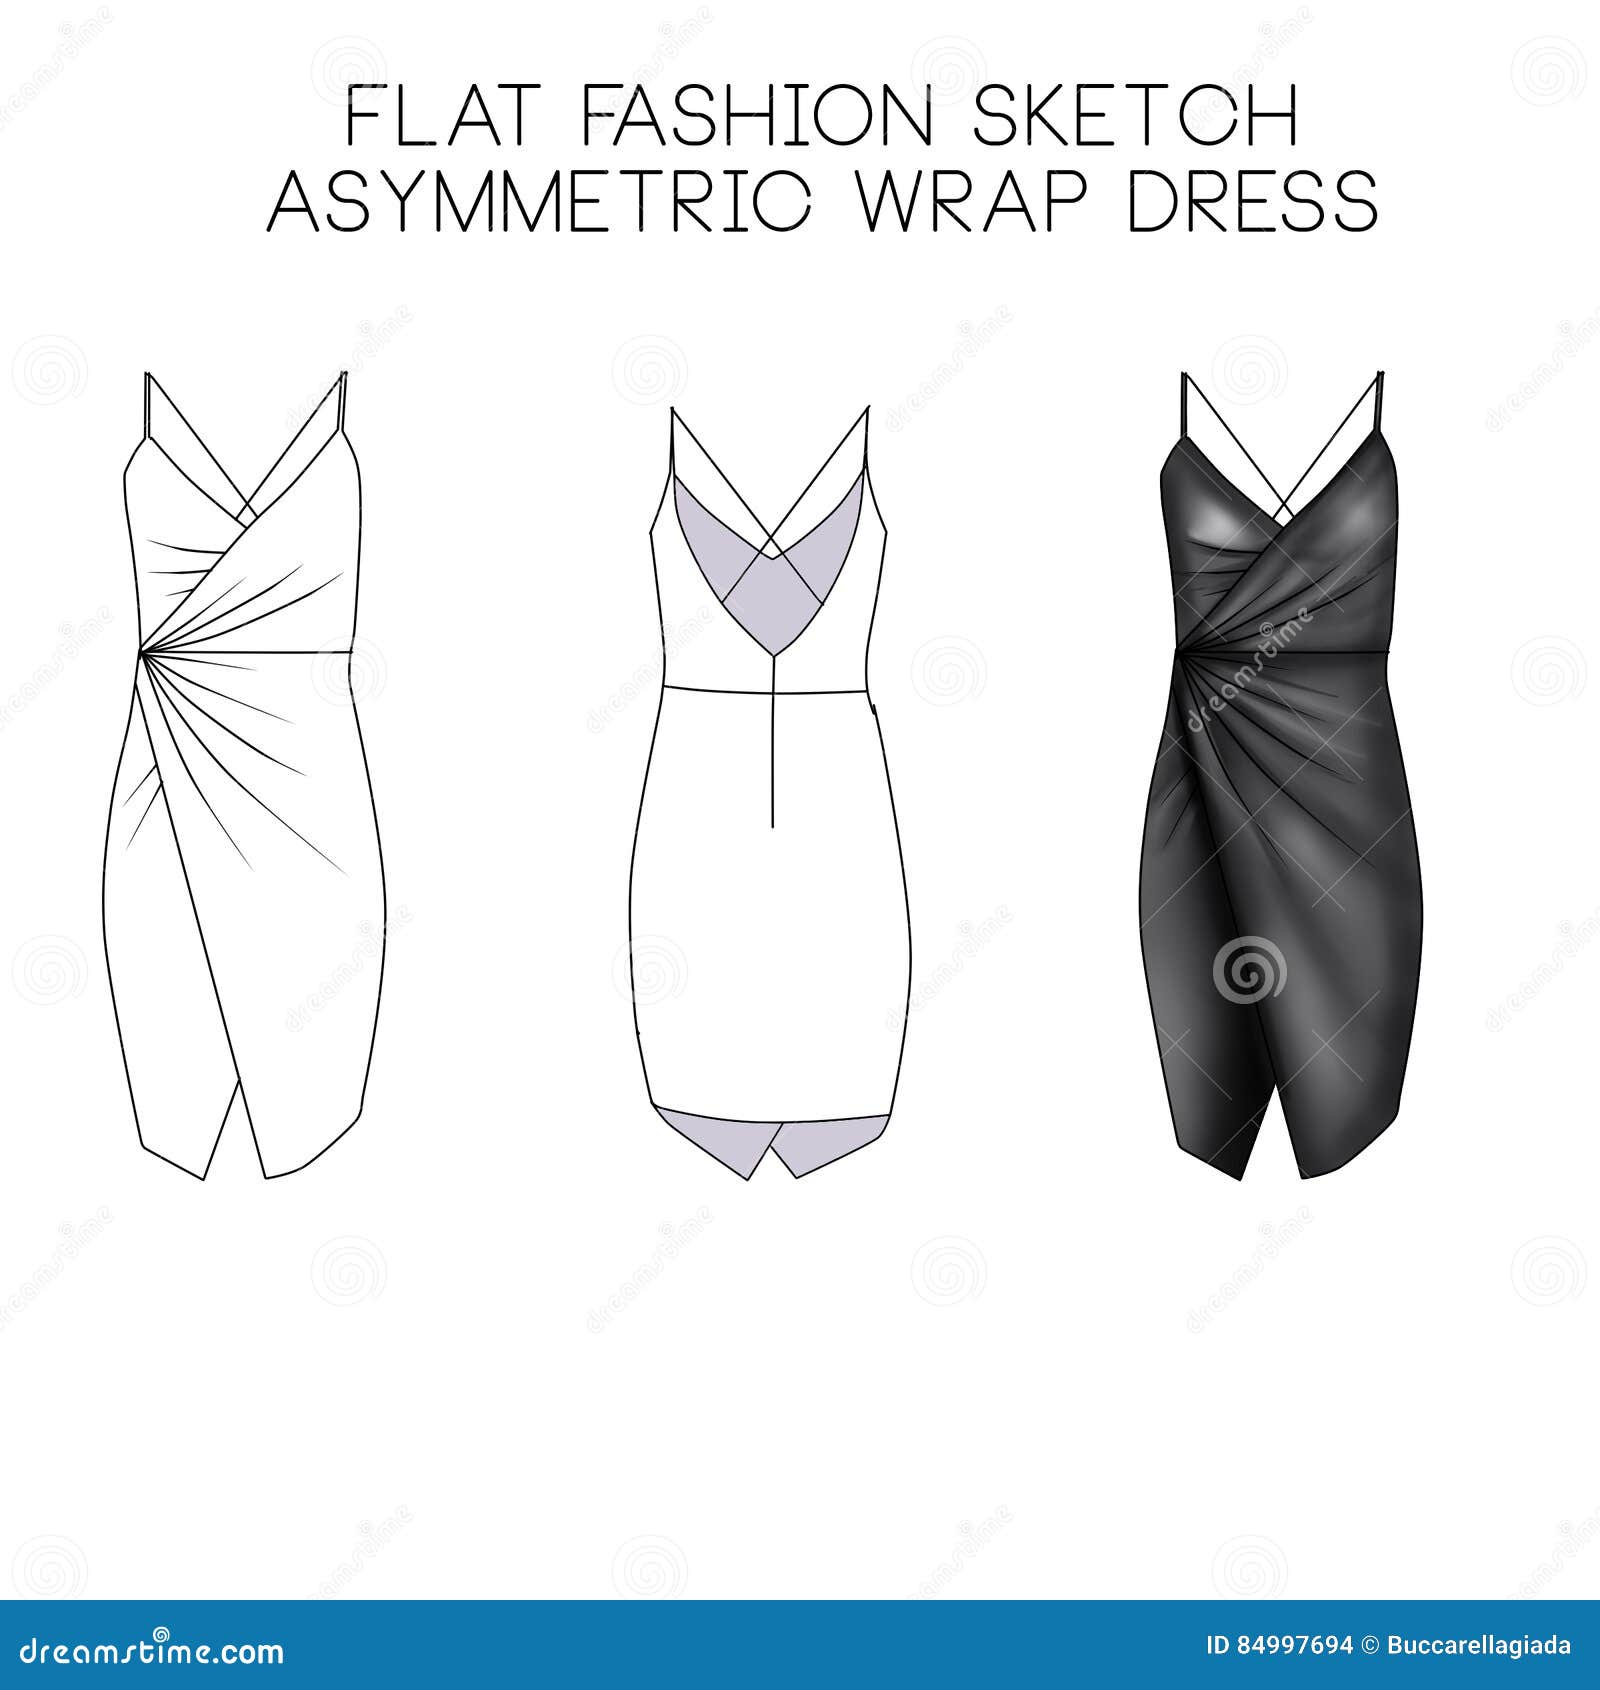 flat fashion technical sketch - asymmetric wrap dress